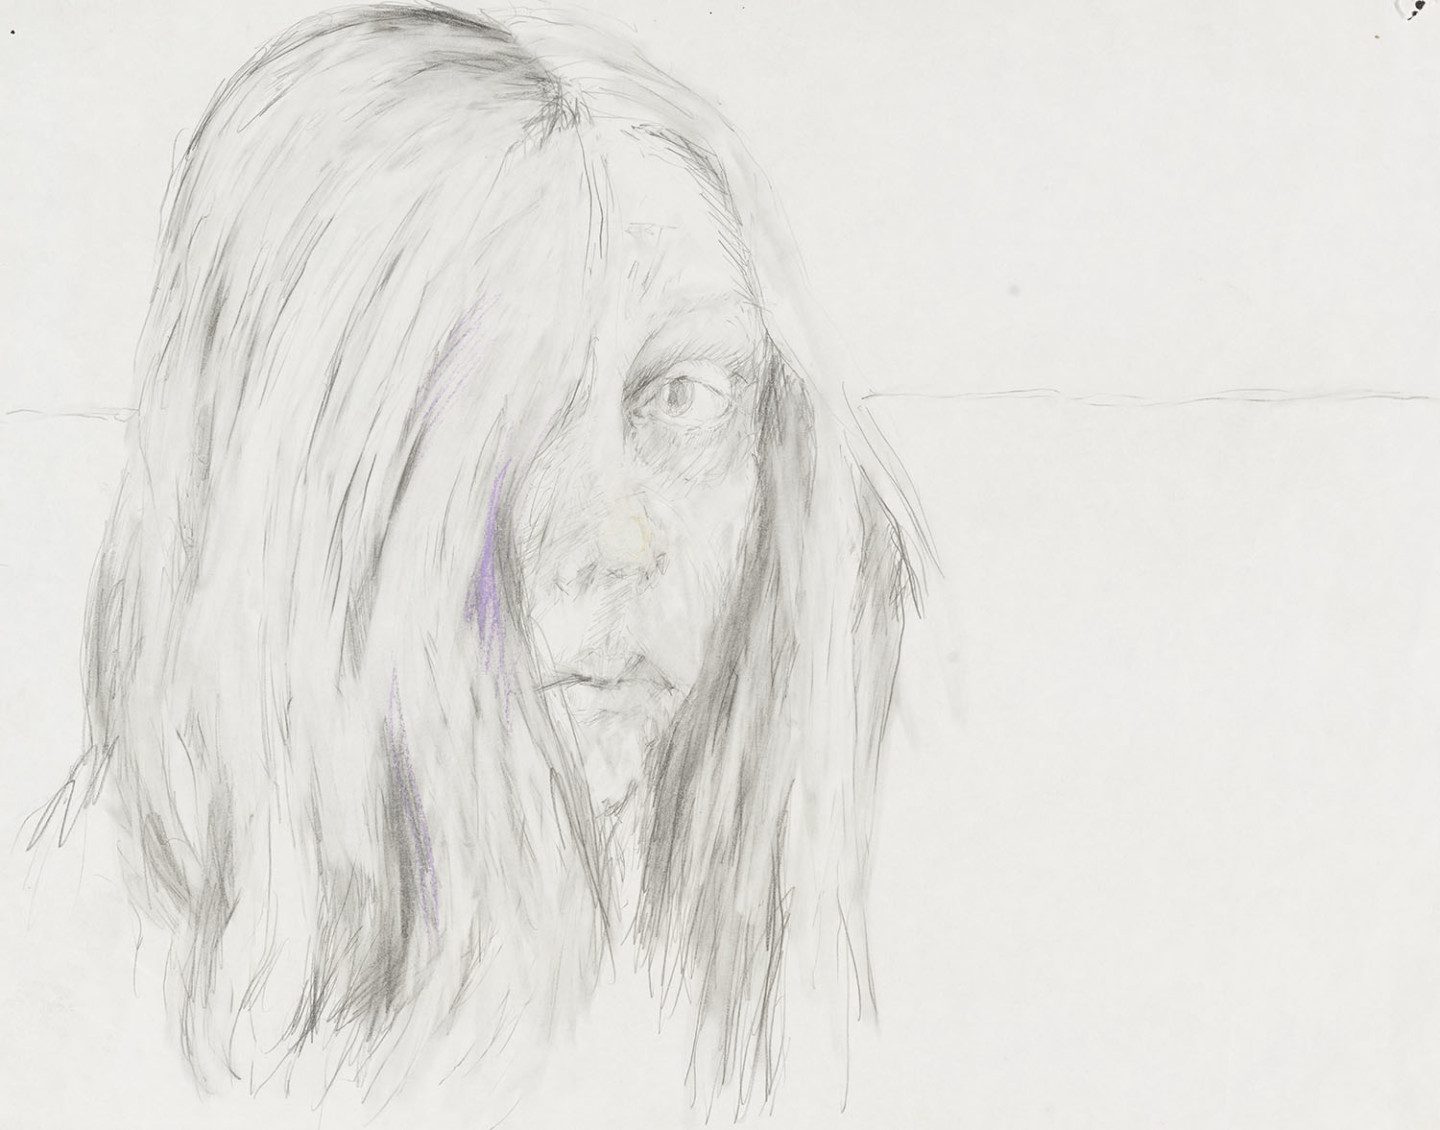 Skissat självporträtt av Stina Ekman, en kvinna vars hår täcker höger öga medan hon ser mot oss